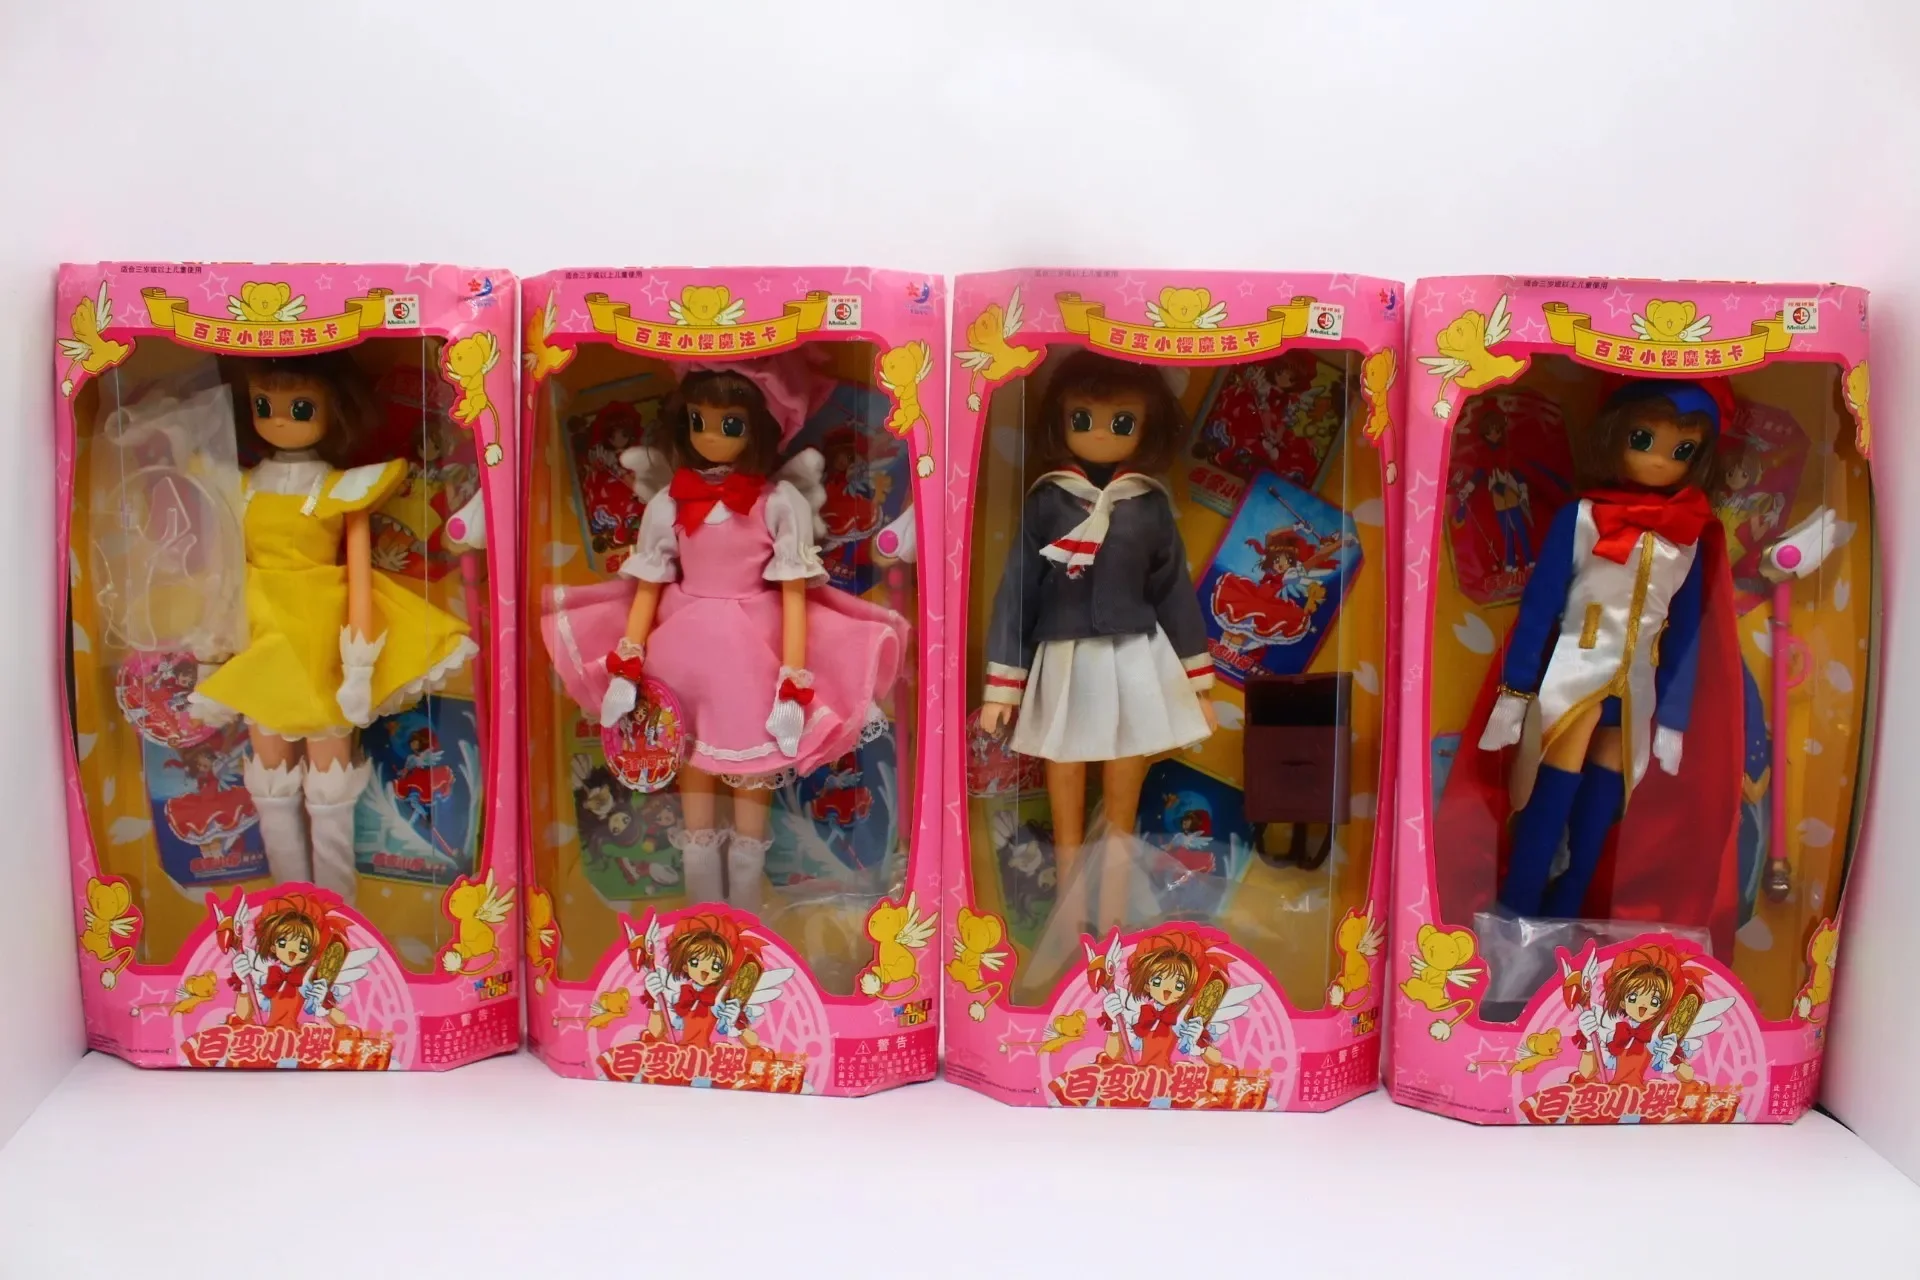 

Anime Cardcaptor Sakura Barbie Doll Bjd Figure Doll Changing Sakura Kawaii Girl Action Figurine Christmas Toys Gifts For Girls